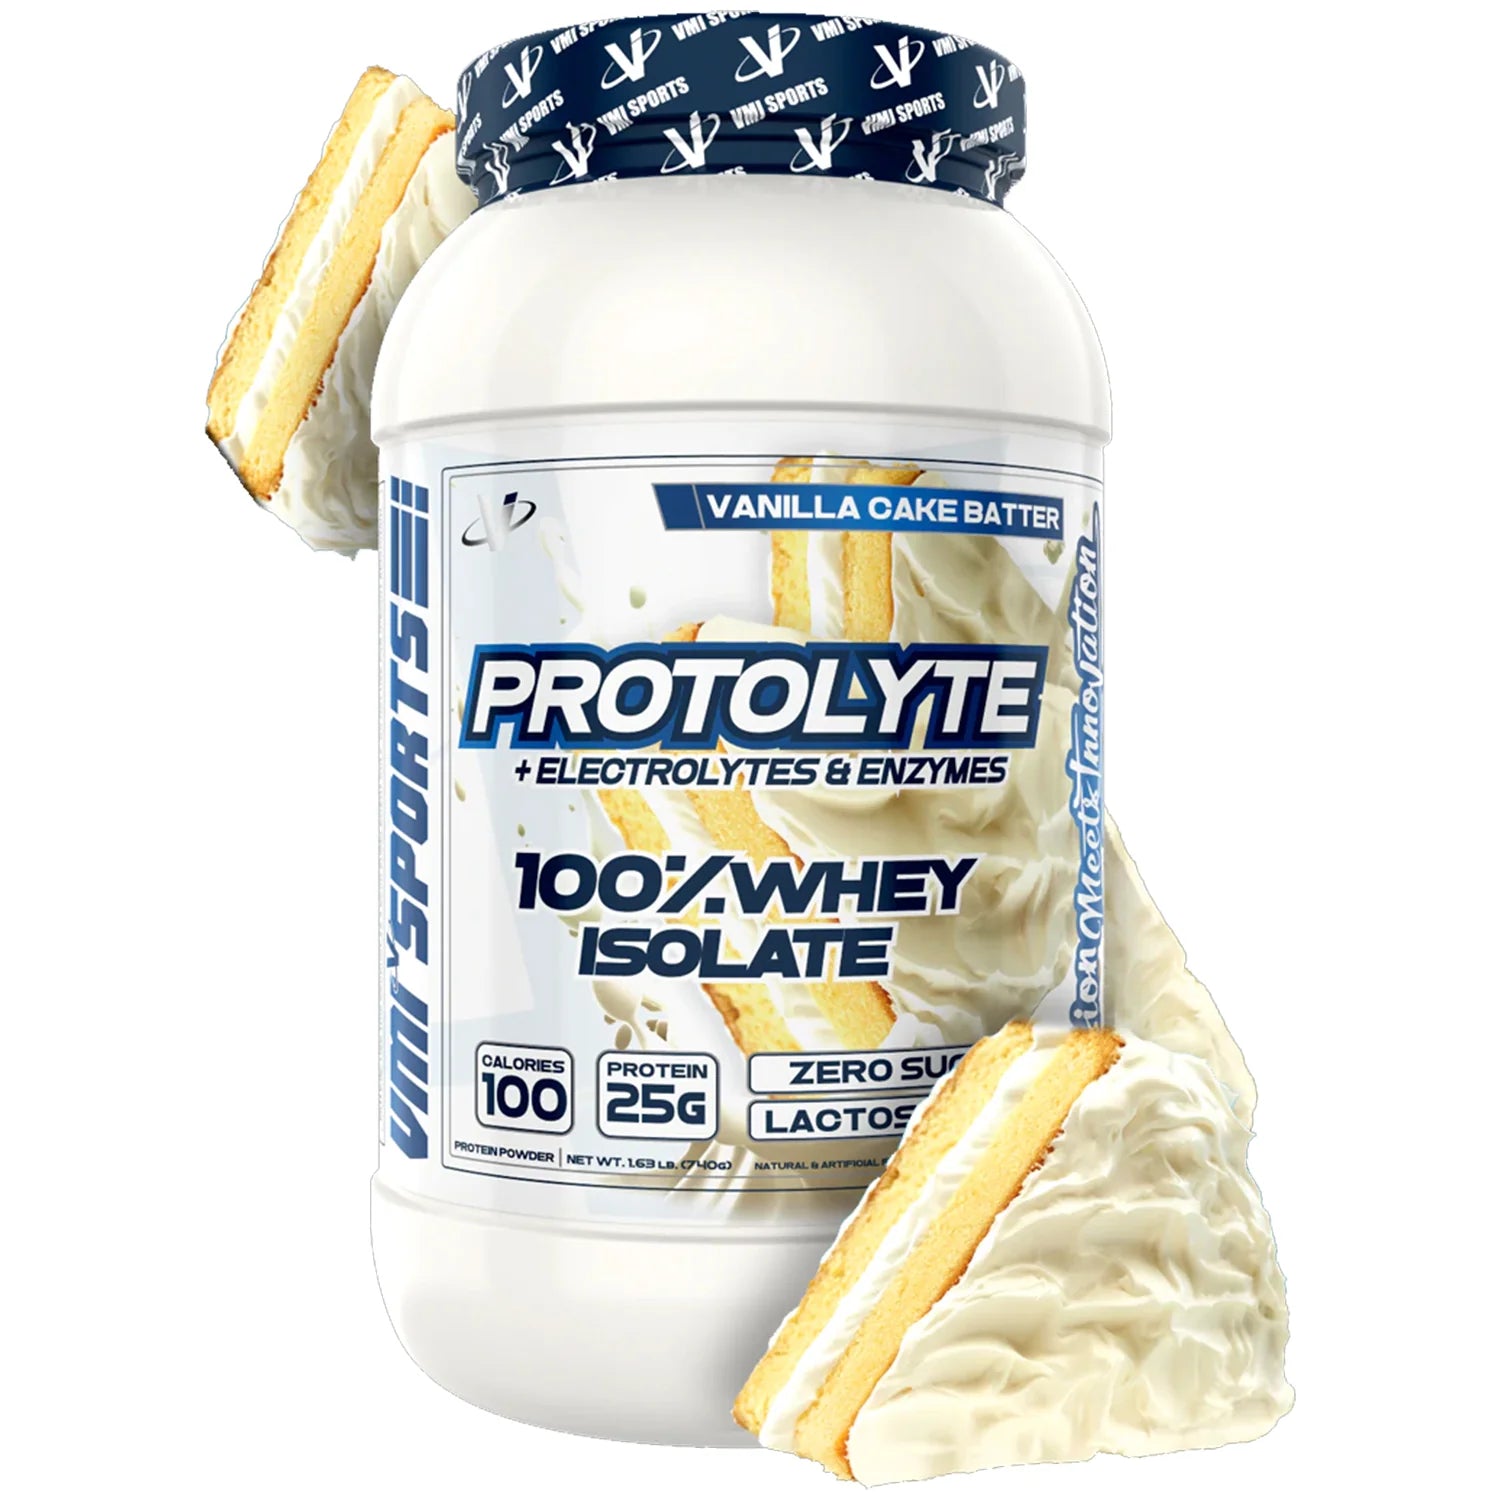 VMI Protolyte Protein 25 Servings (Vanilla Cake Batter)